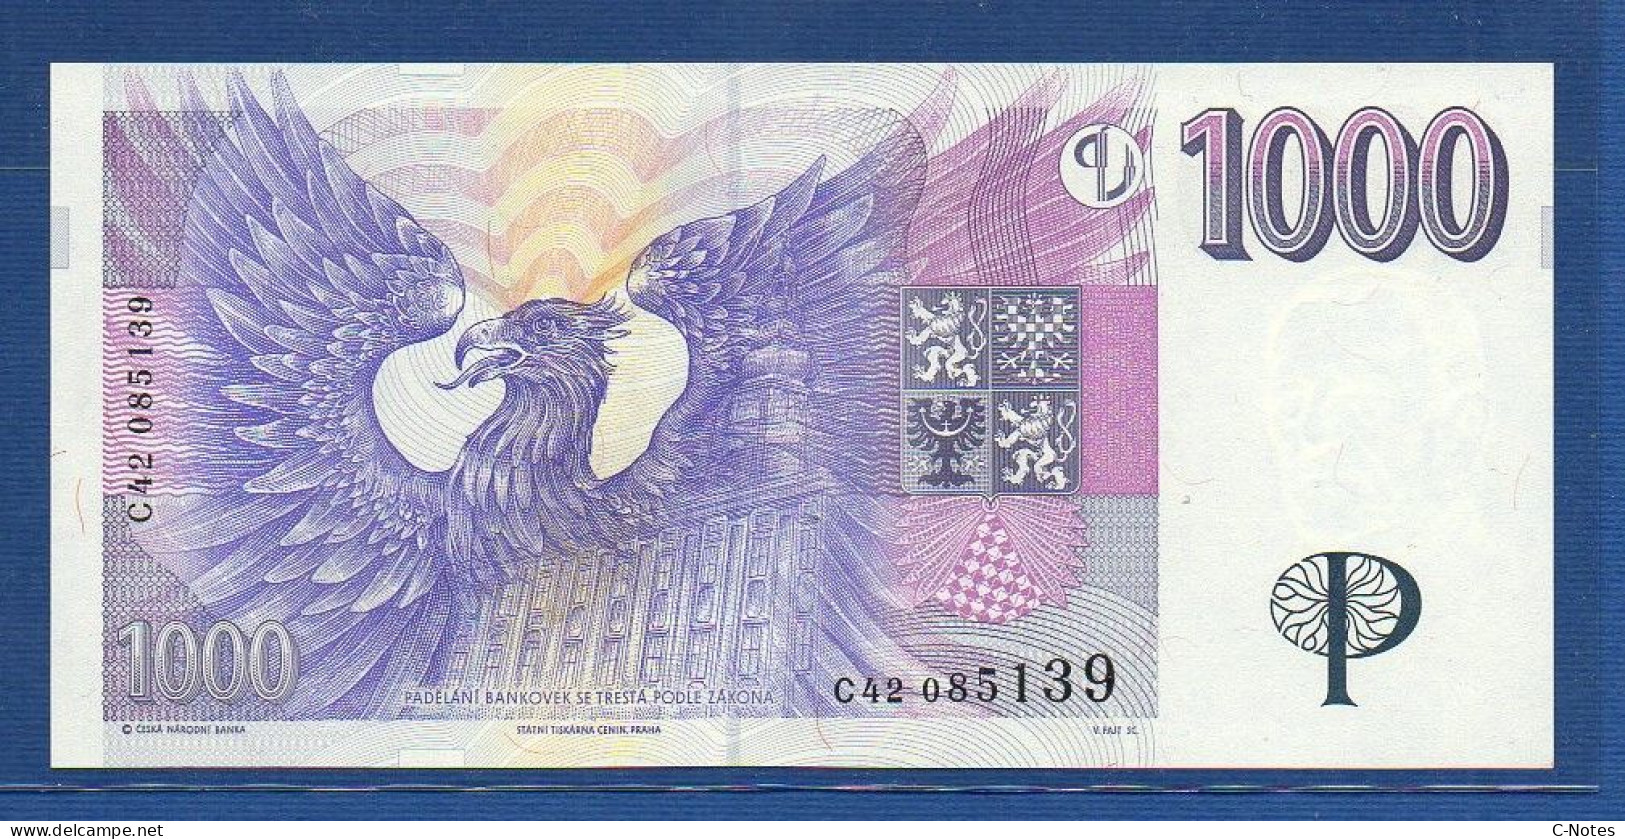 CZECHIA - CZECH Republic - P.15a – 1000 Korun 1996 UNC, S/n C42 085139 - República Checa